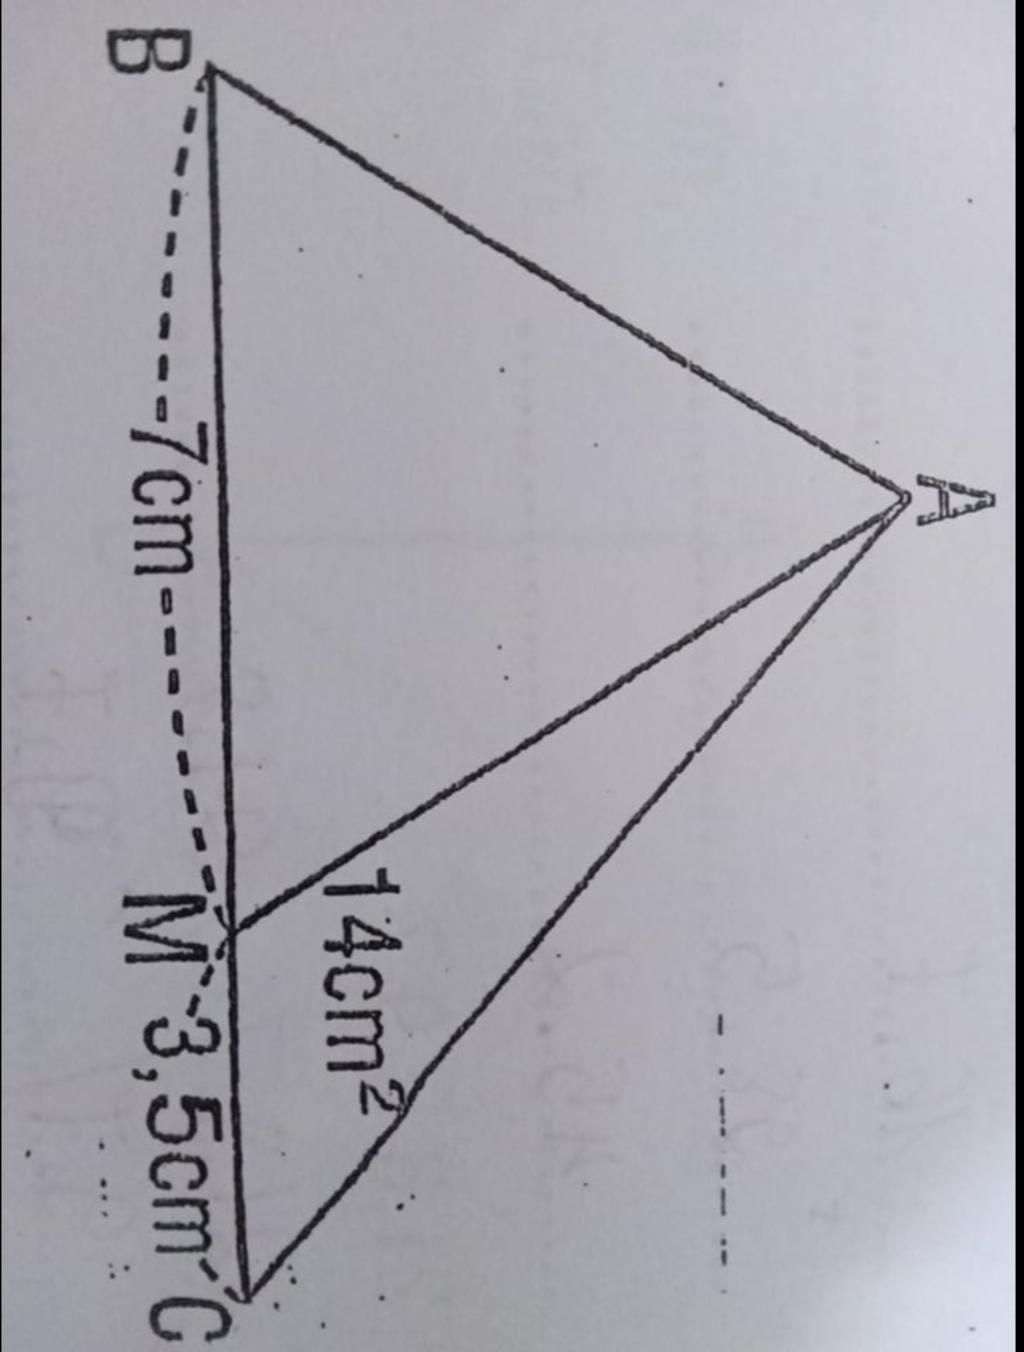 Làm thế nào để tính diện tích hình tam giác ABM khi biết diện tích hình tam giác AMC và hai cạnh MC và BM?
